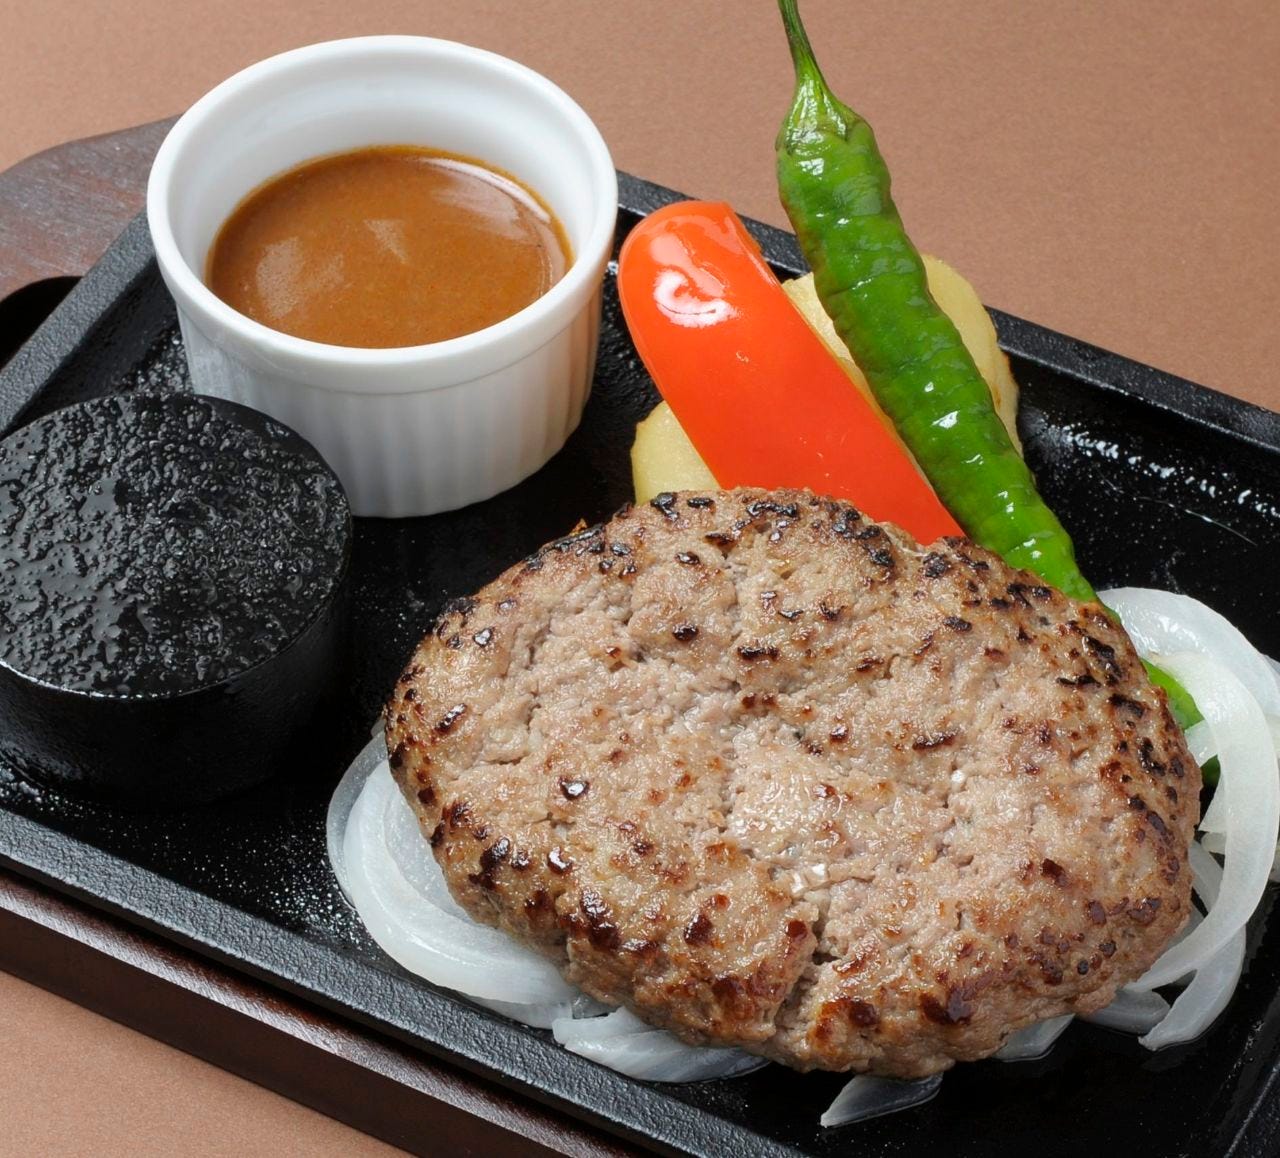 鉄板に置かれたハンバーグと焼き野菜の「神戸牛入り手ごねハンバーグ」